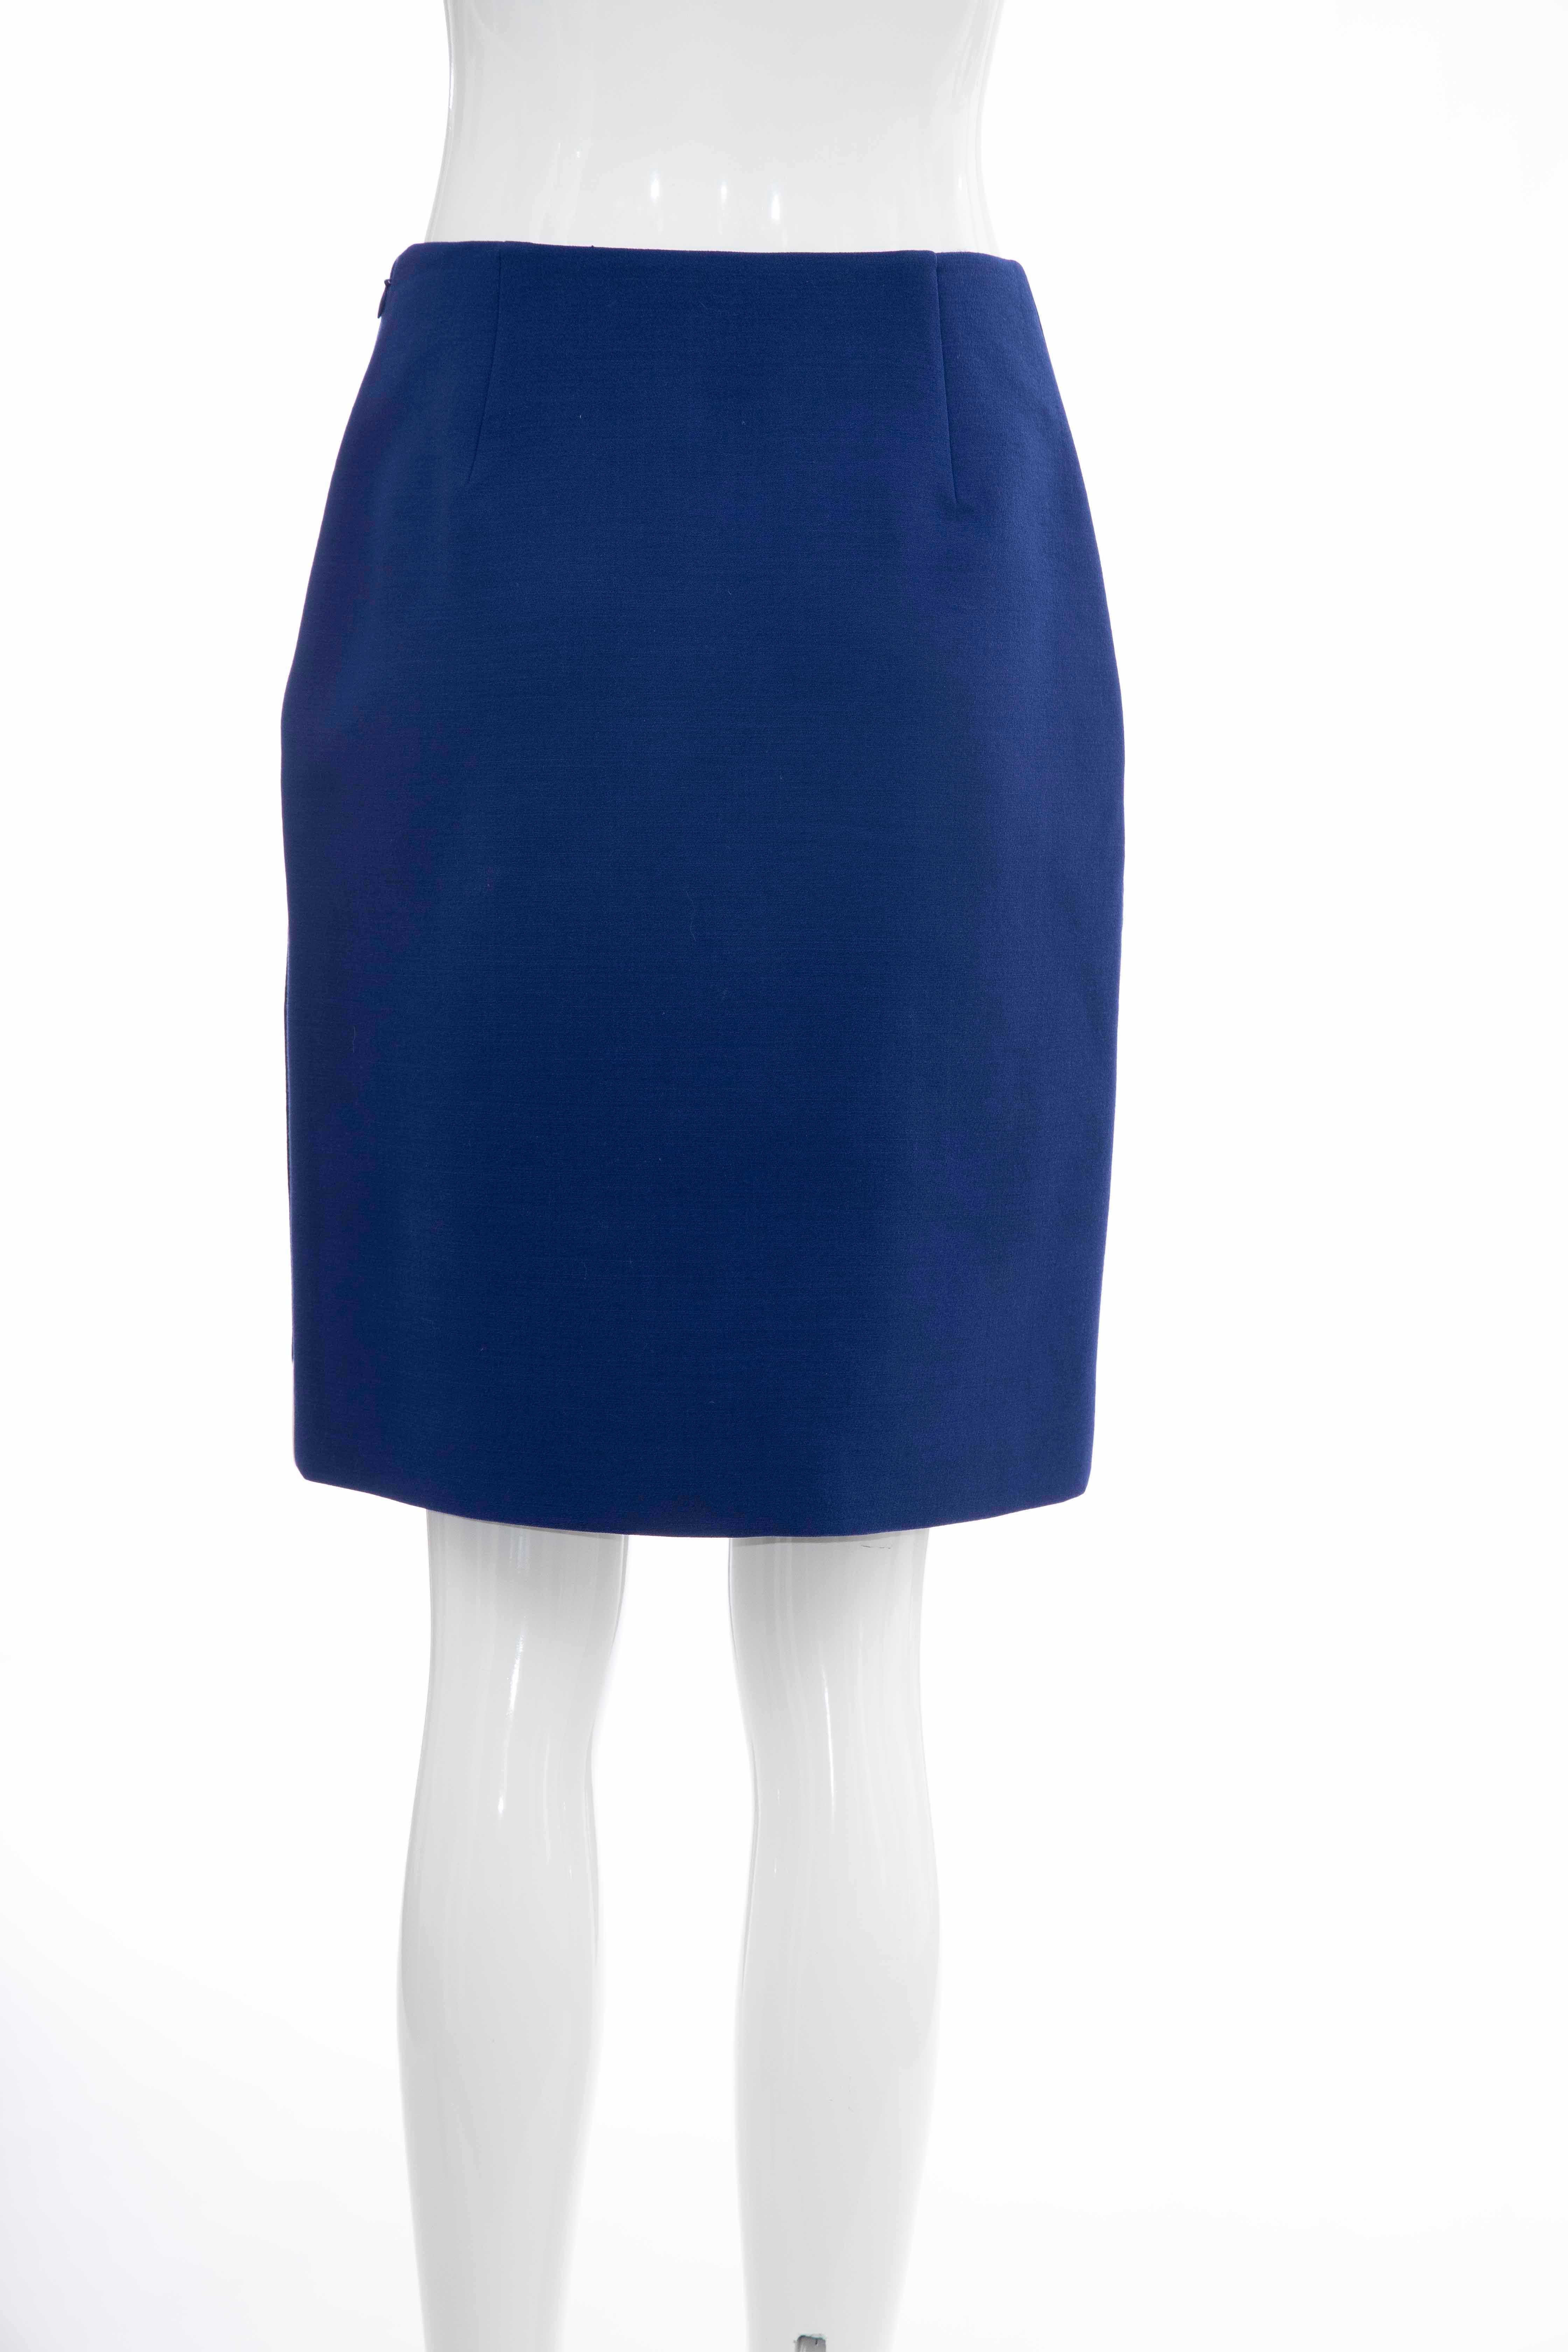 Prada Runway Virgin Wool Silk Bead Embroidery Pencil Skirt, Spring 2014 For Sale 3